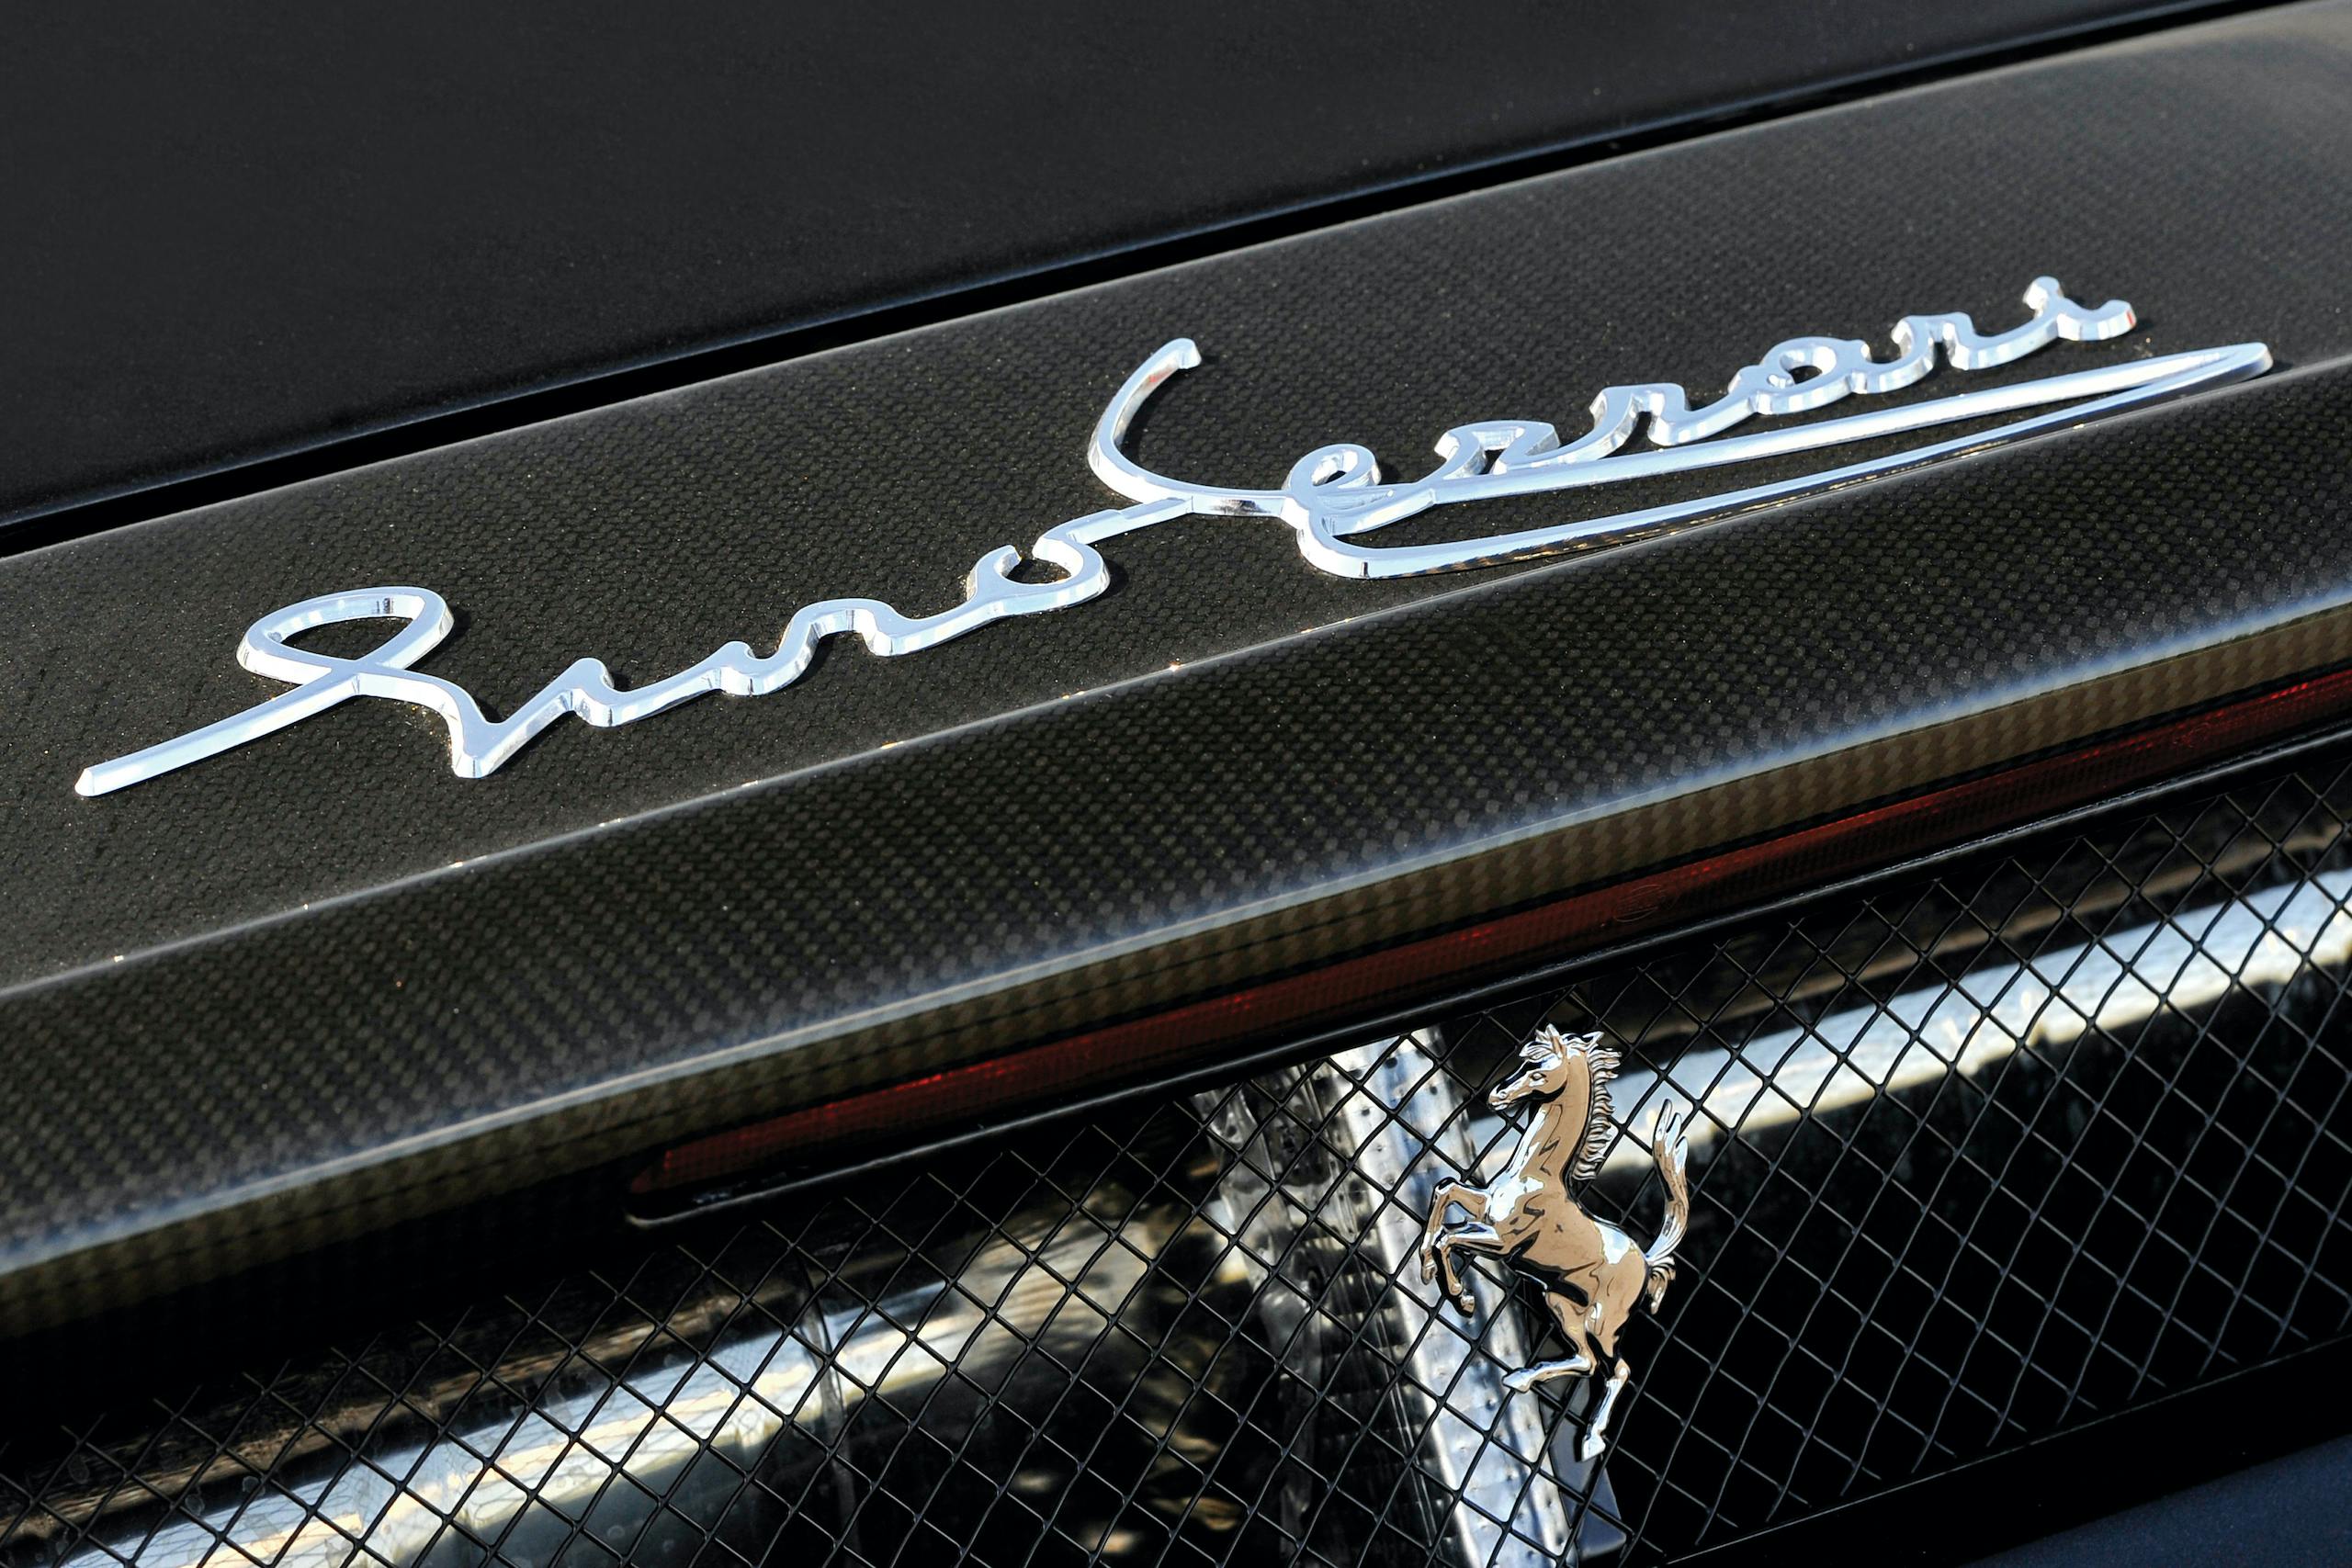 2004 Ferrari Enzo lettering detail